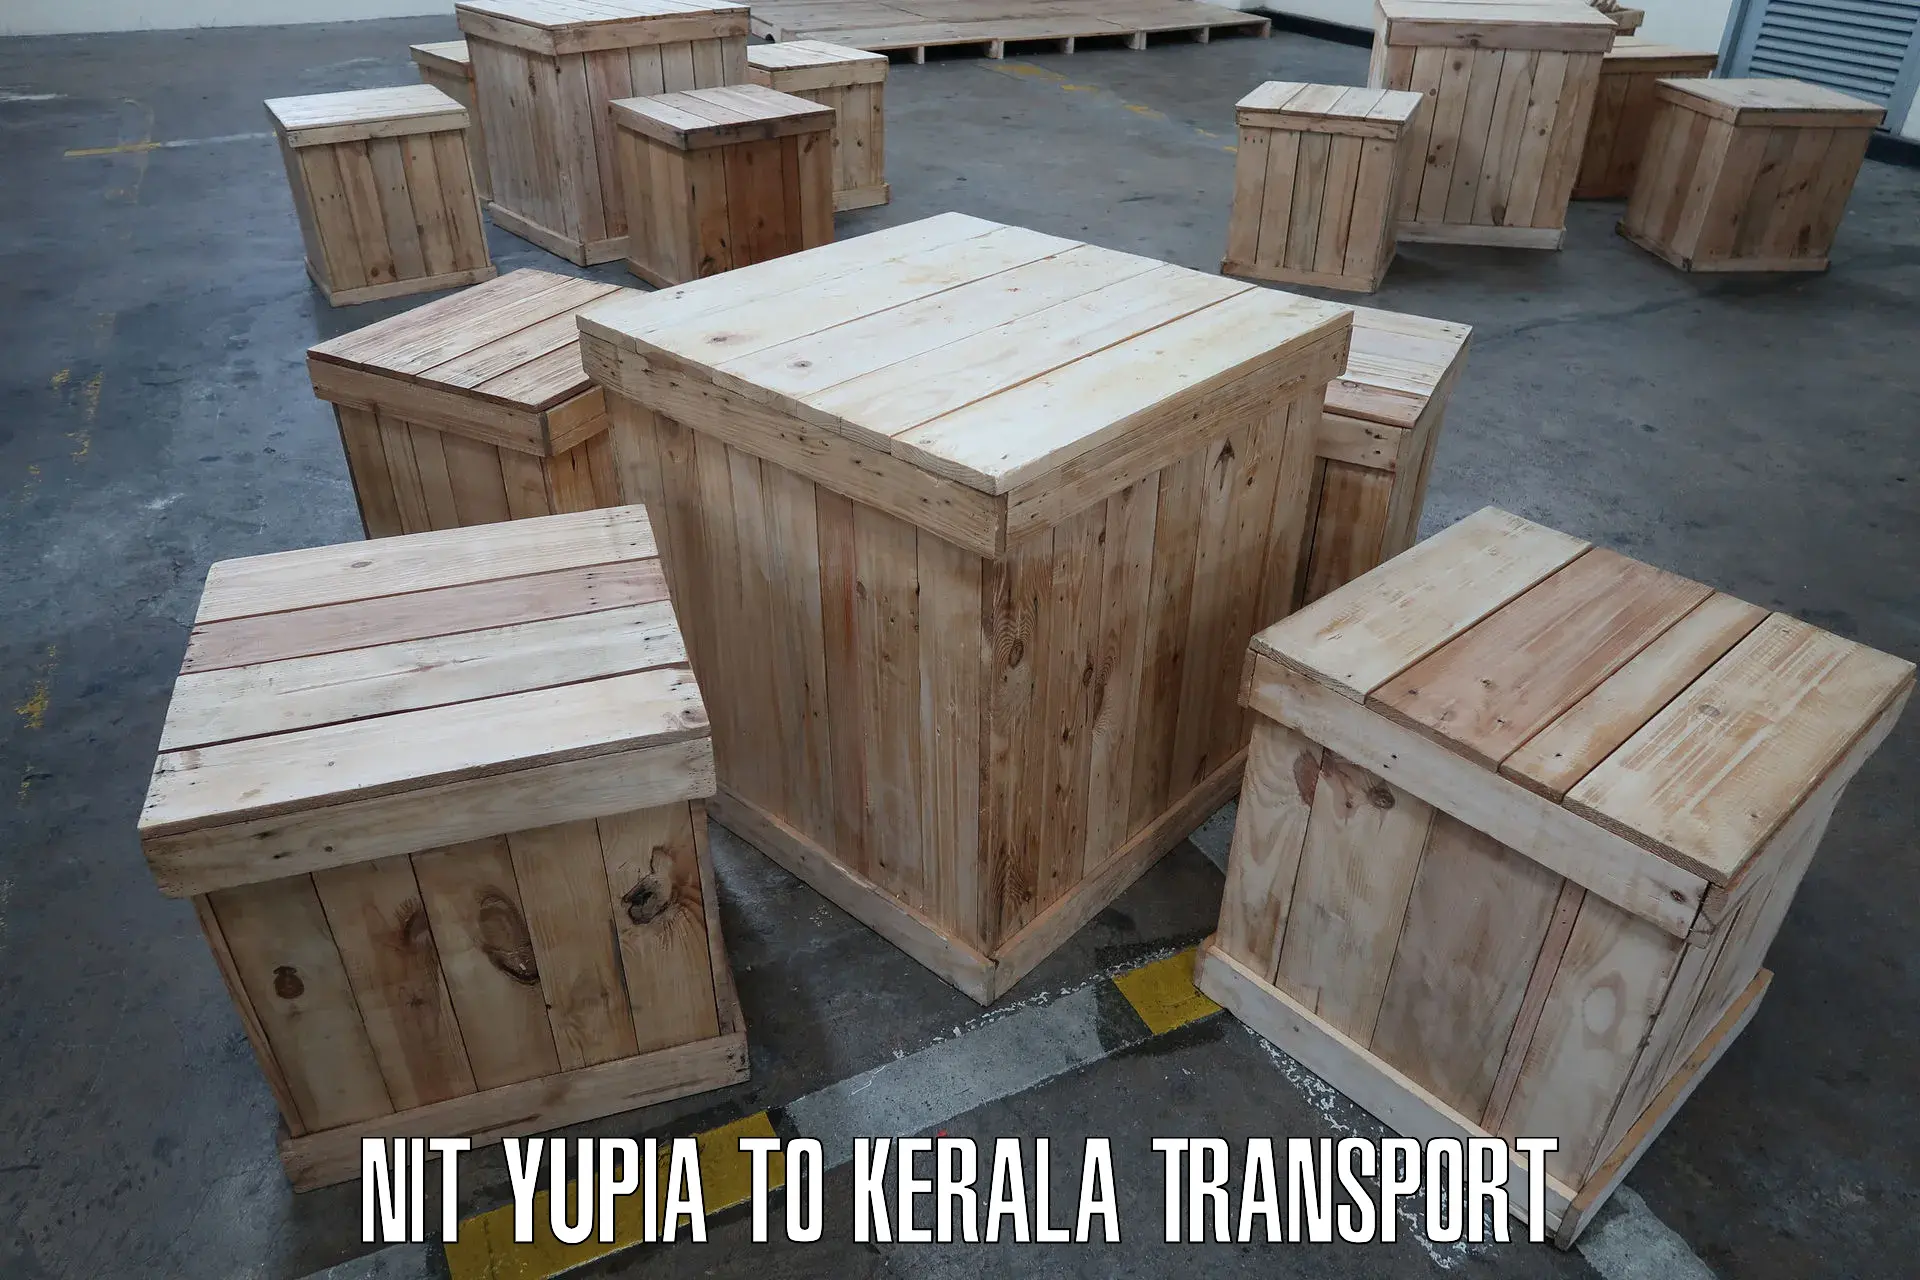 Luggage transport services NIT Yupia to Mundakayam